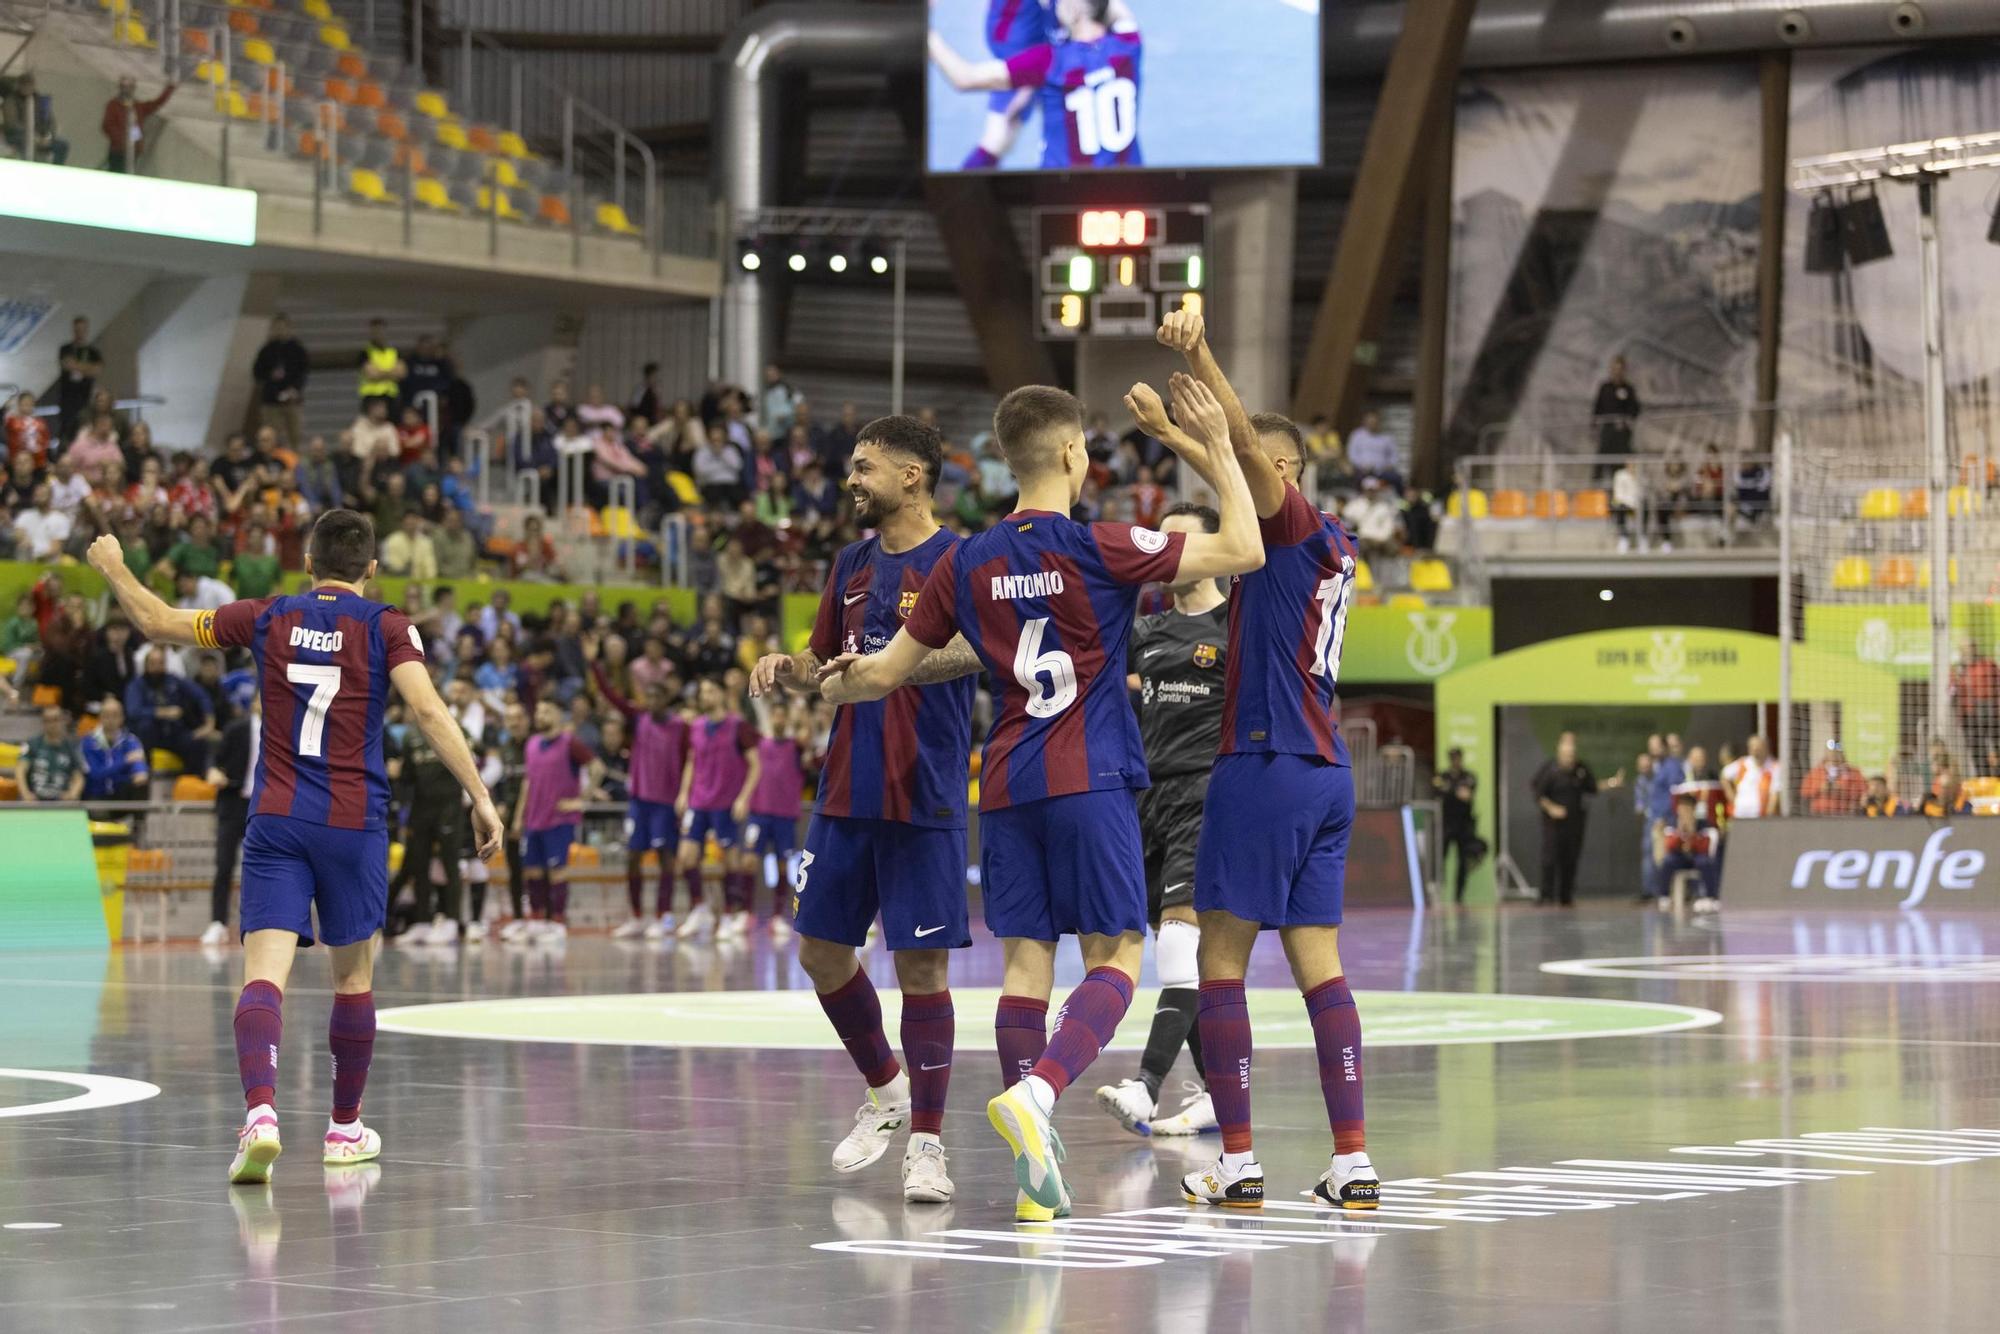 Las imágenes del Barça - Osasuna Magna en la Copa de España de Cartagena